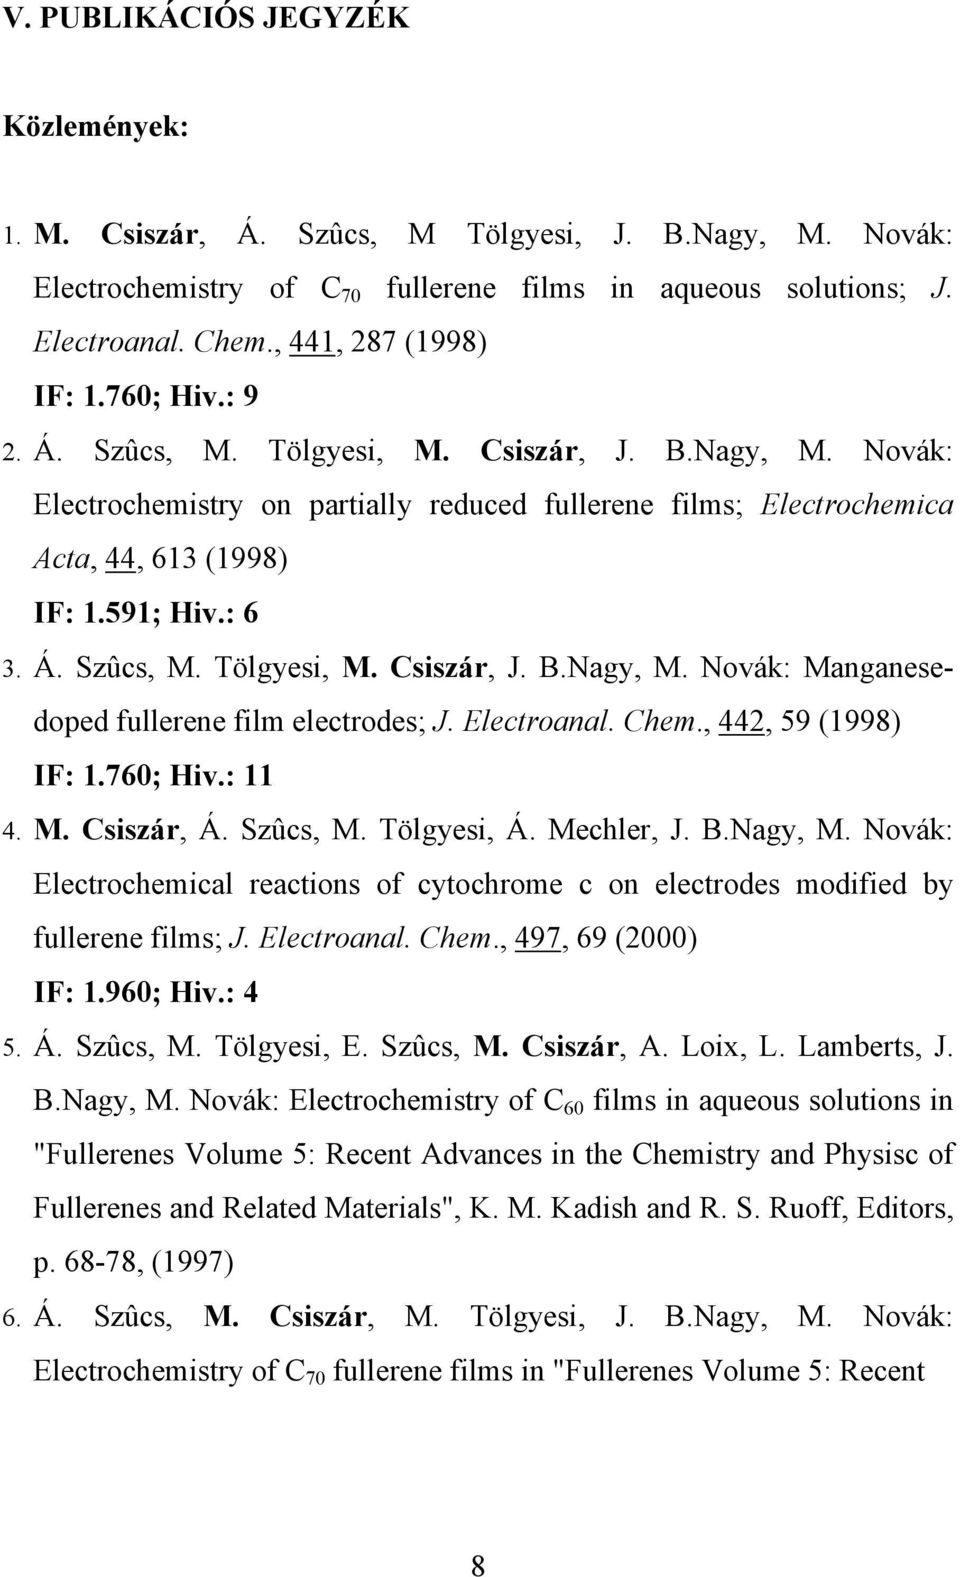 591; Hiv.: 6 3. Á. Szûcs, M. Tölgyesi, M. Csiszár, J. B.Nagy, M. Novák: Manganesedoped fullerene film electrodes; J. Electroanal. Chem., 442, 59 (1998) IF: 1.760; Hiv.: 11 4. M. Csiszár, Á. Szûcs, M. Tölgyesi, Á.